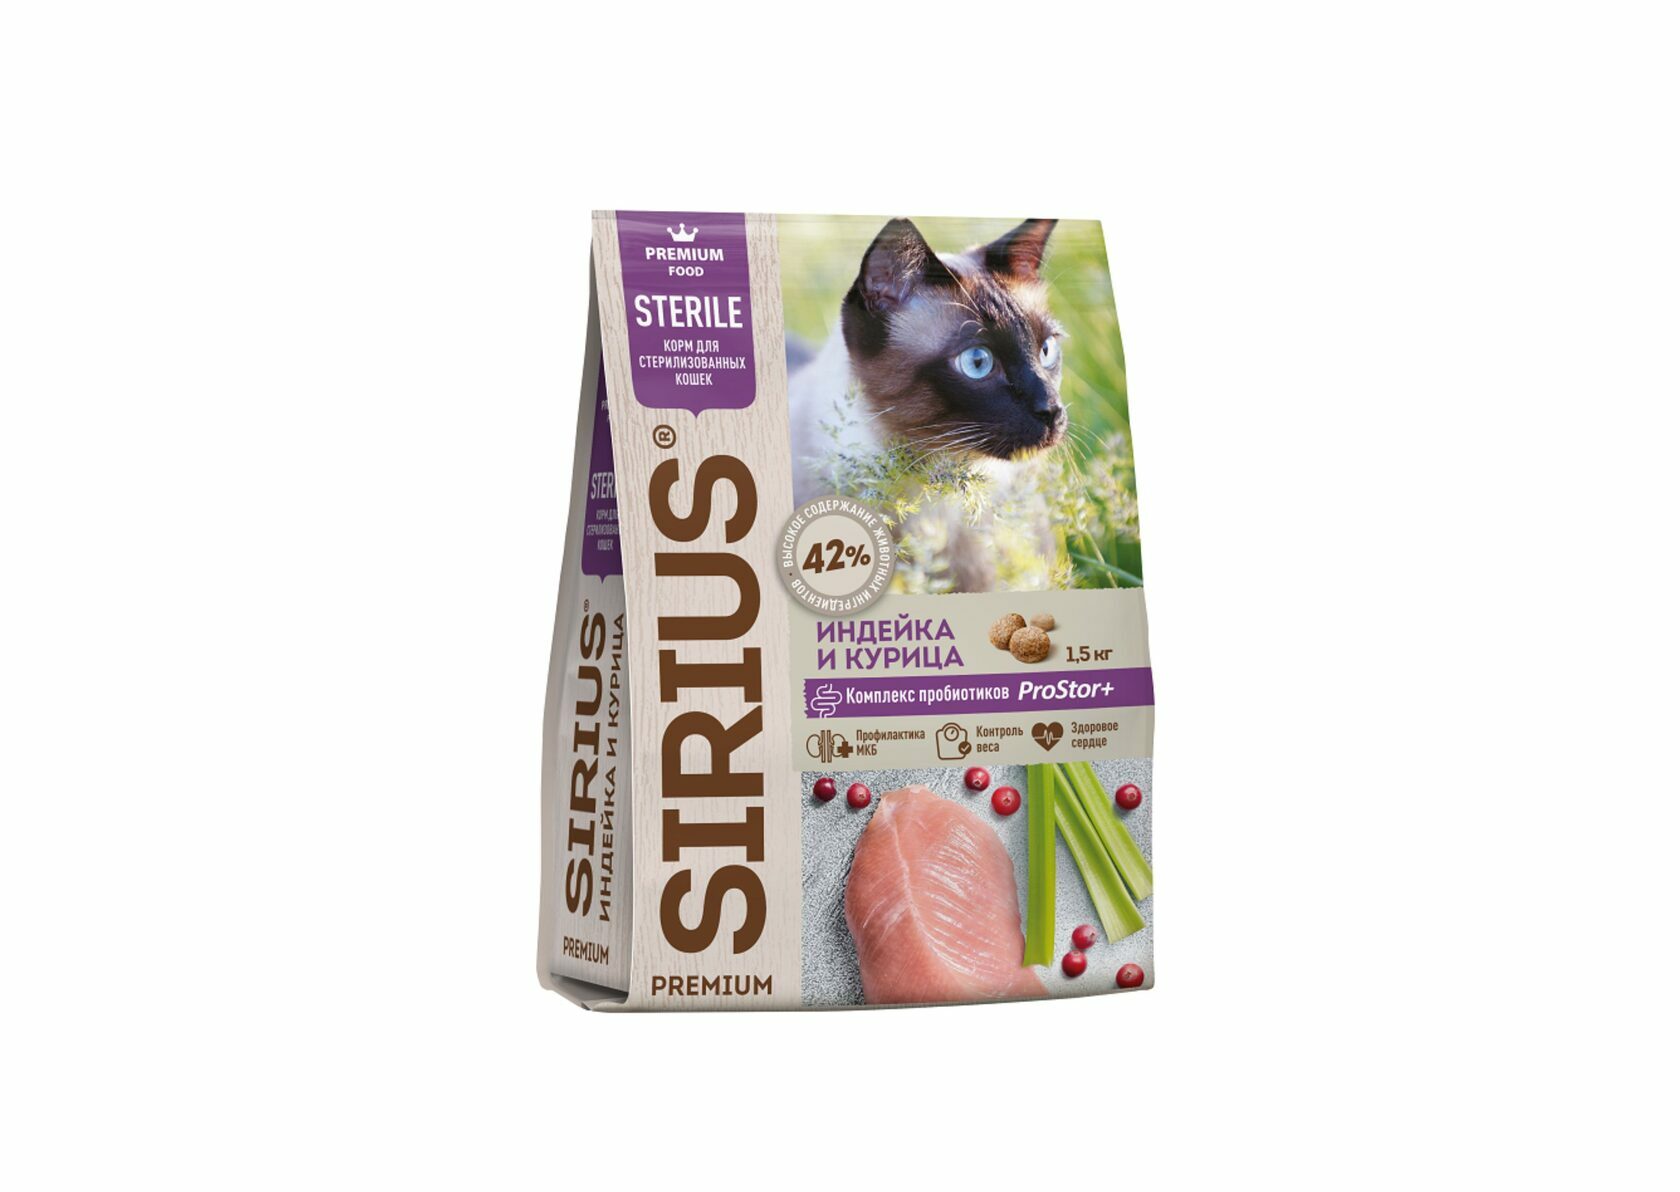 Сухой корм премиум класса SIRIUS для стерилизованных кошек. 